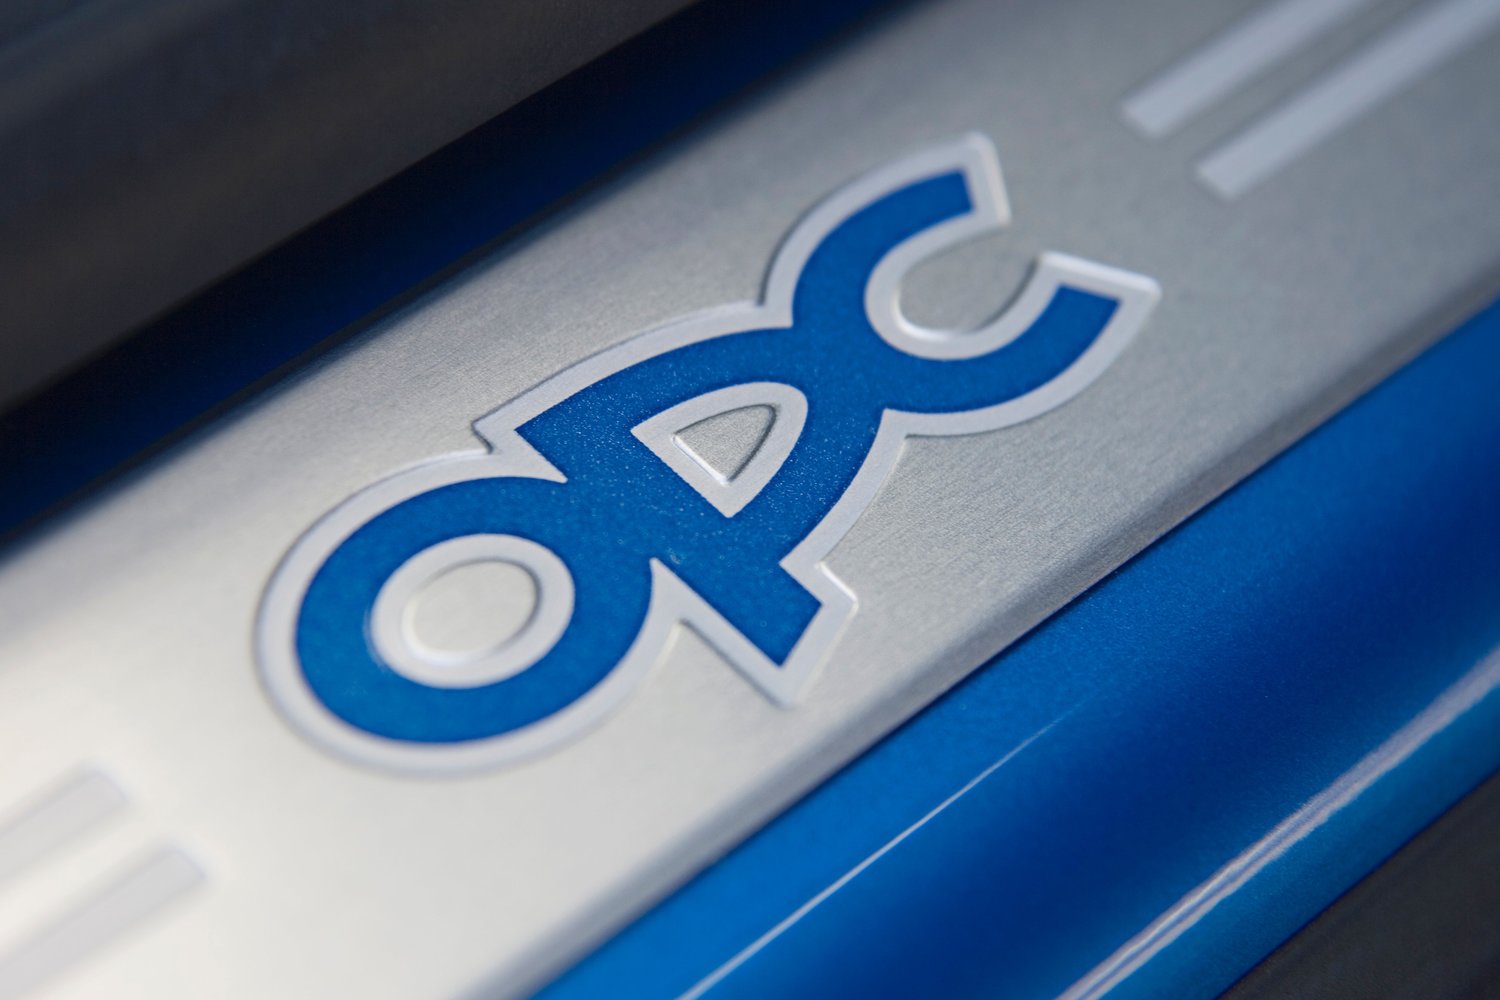 минивэн Opel Meriva OPC 2005 - 2010г выпуска модификация OPC 1.6 MT (180 л.с.)